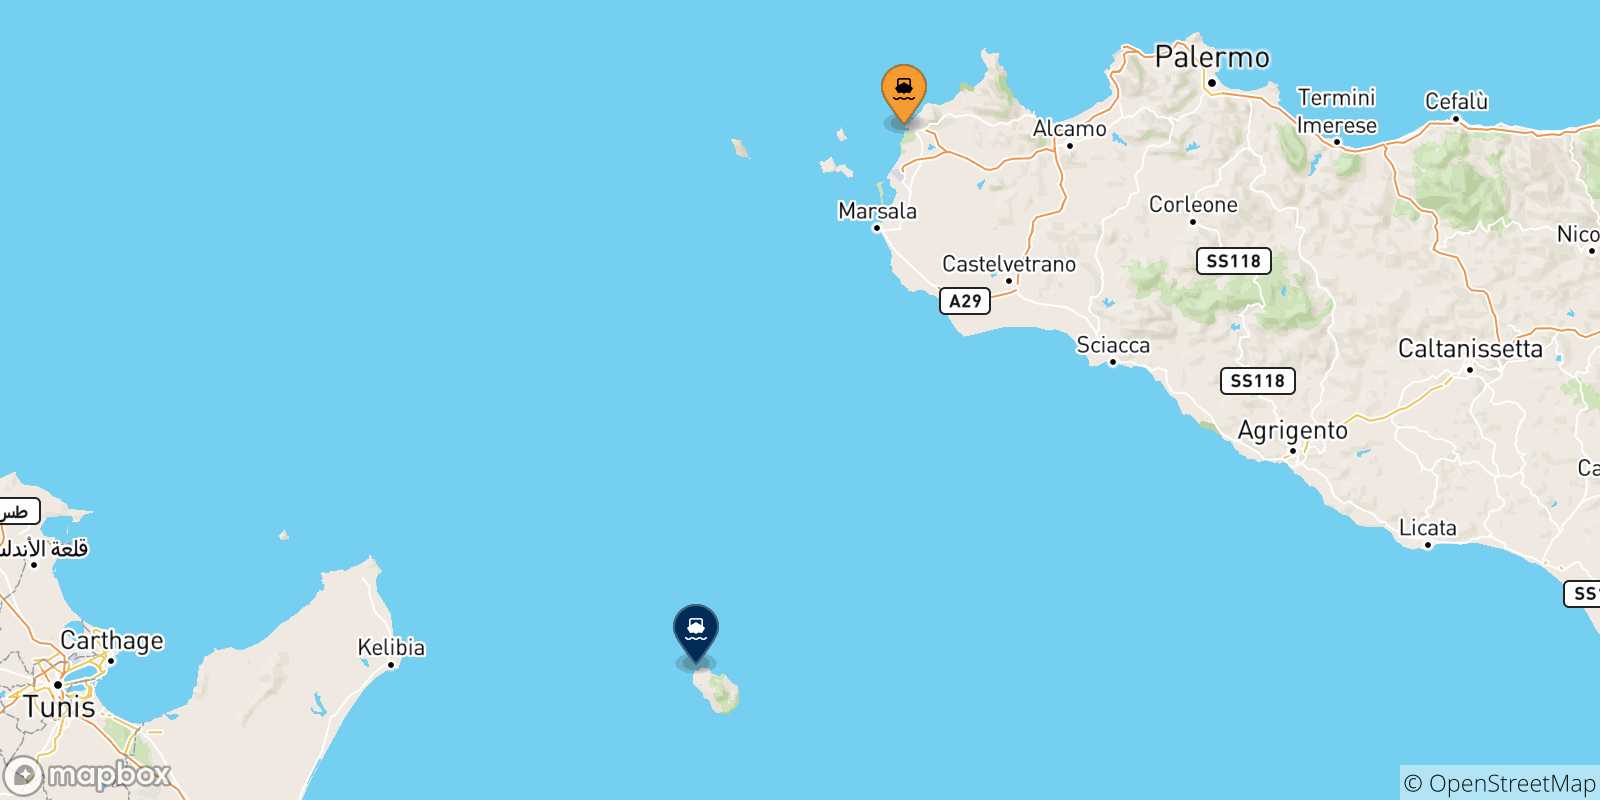 Mappa delle possibili rotte tra la Sicilia e Pantelleria